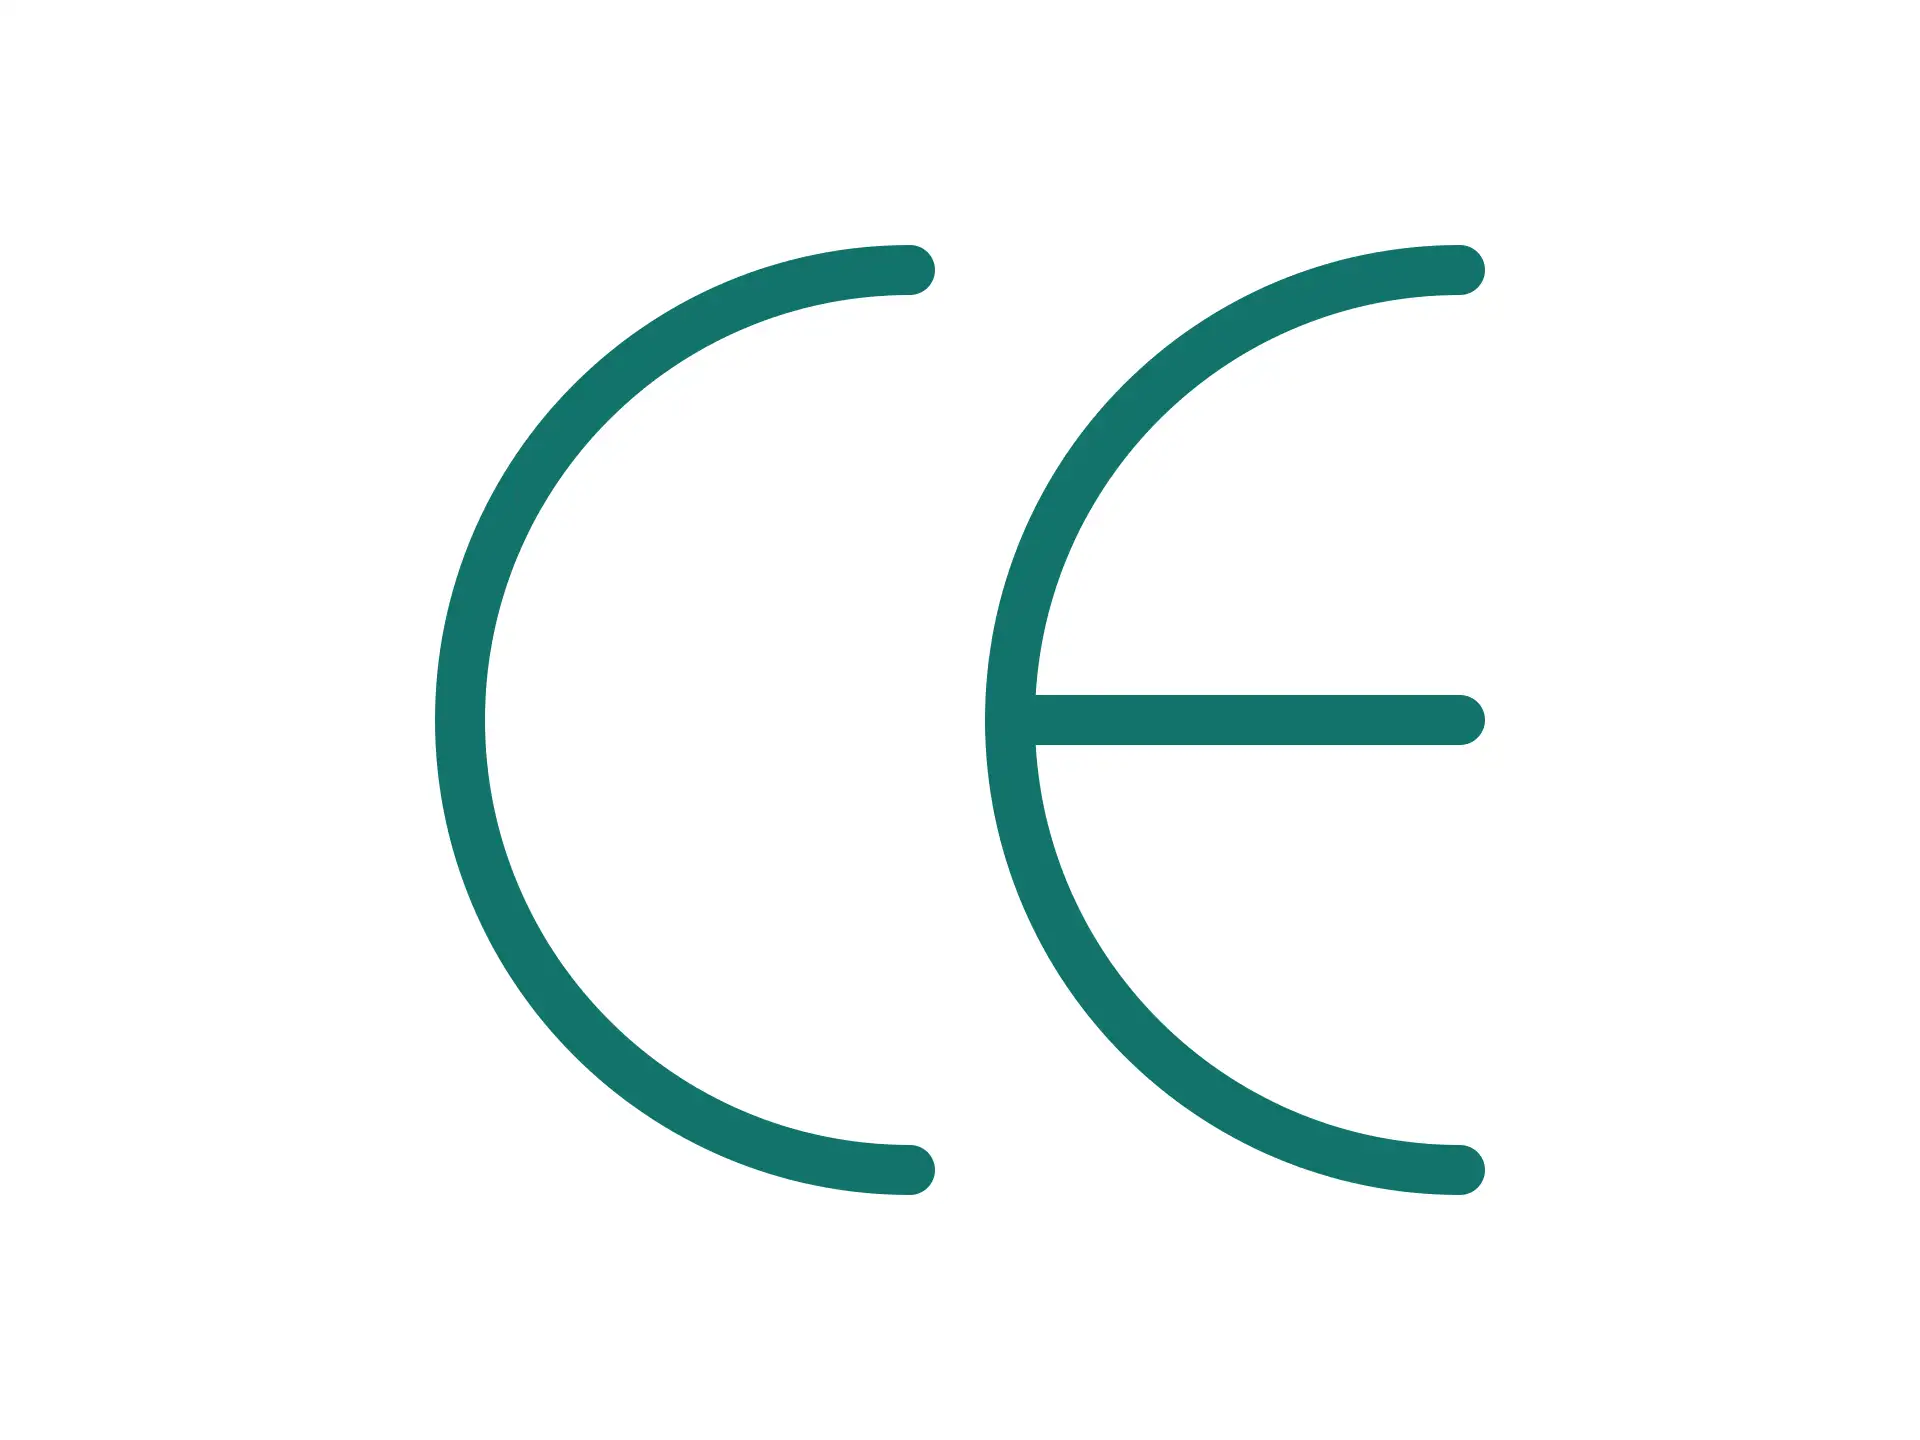 The CE mark